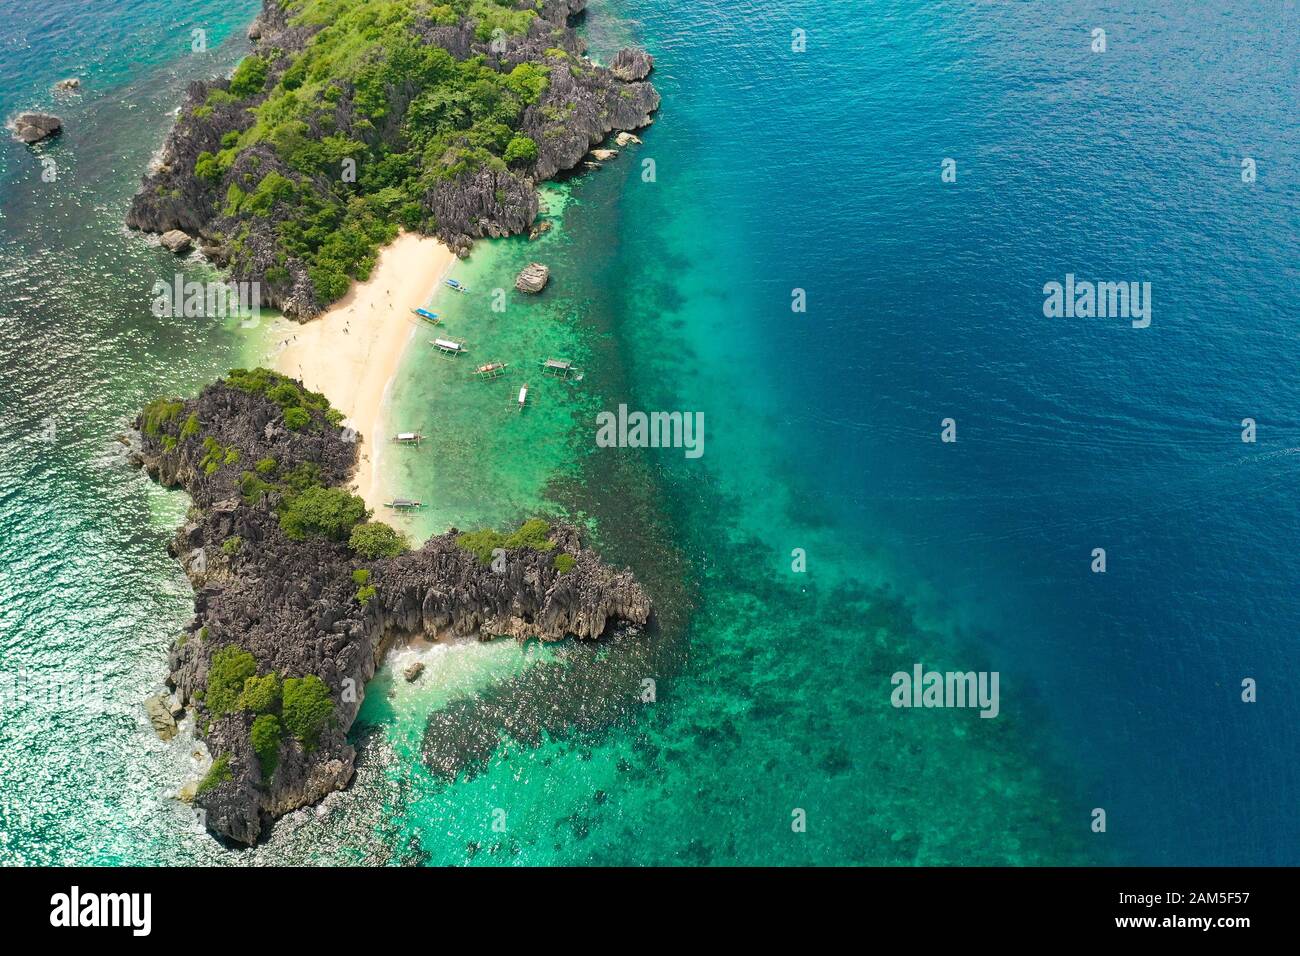 Reisekonzept: Tropischer Sandstrand und türkisfarbener Blick aufs Wasser von oben. Lahos Island, Caramoan Islands, Philippines. Sommer- und Reiseurlaubskonzept. Stockfoto